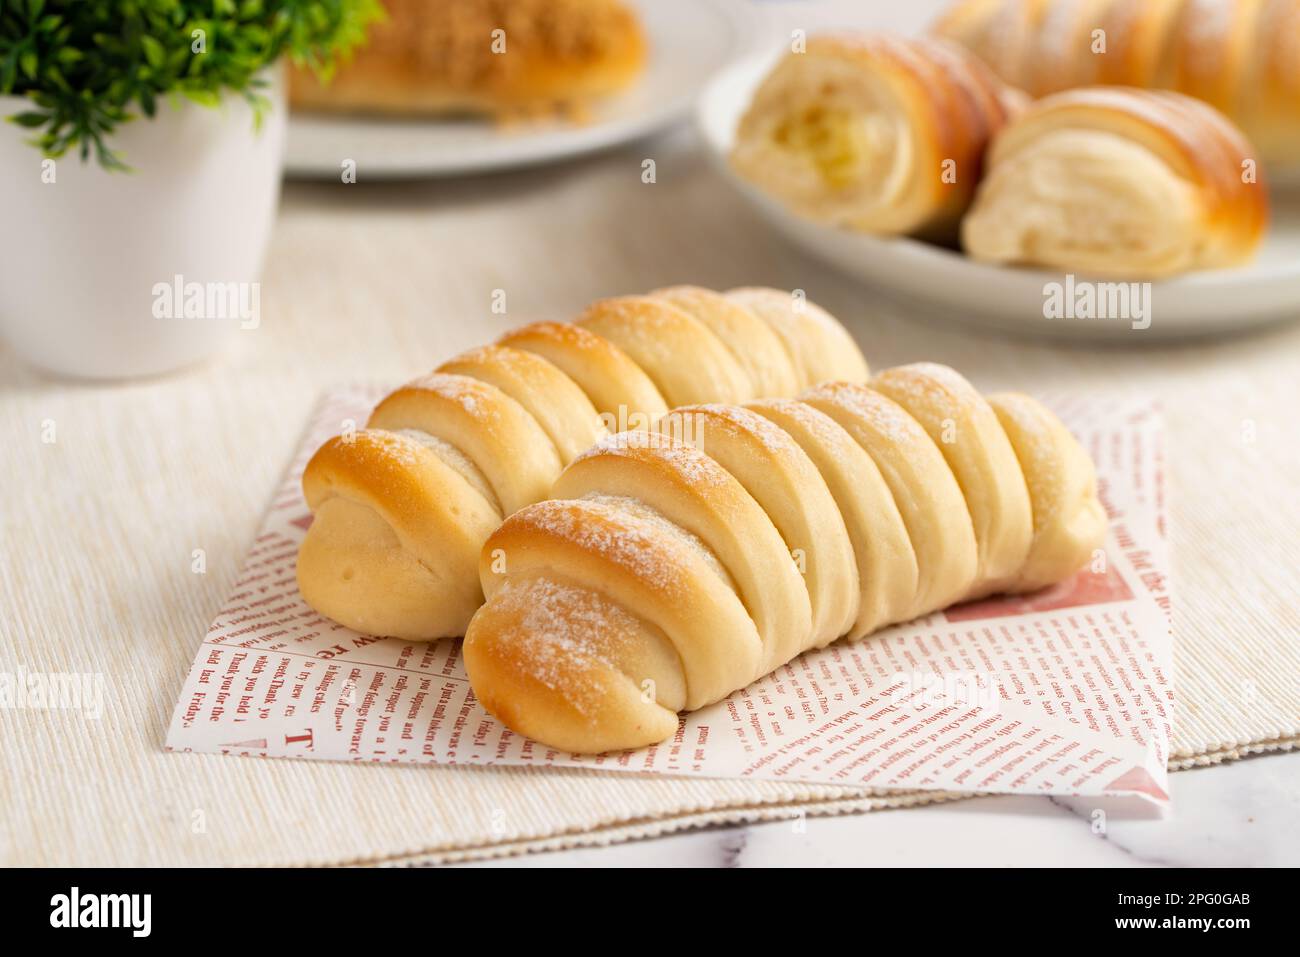 Caterpillar-Brot auf Serviette gelegt Stockfoto